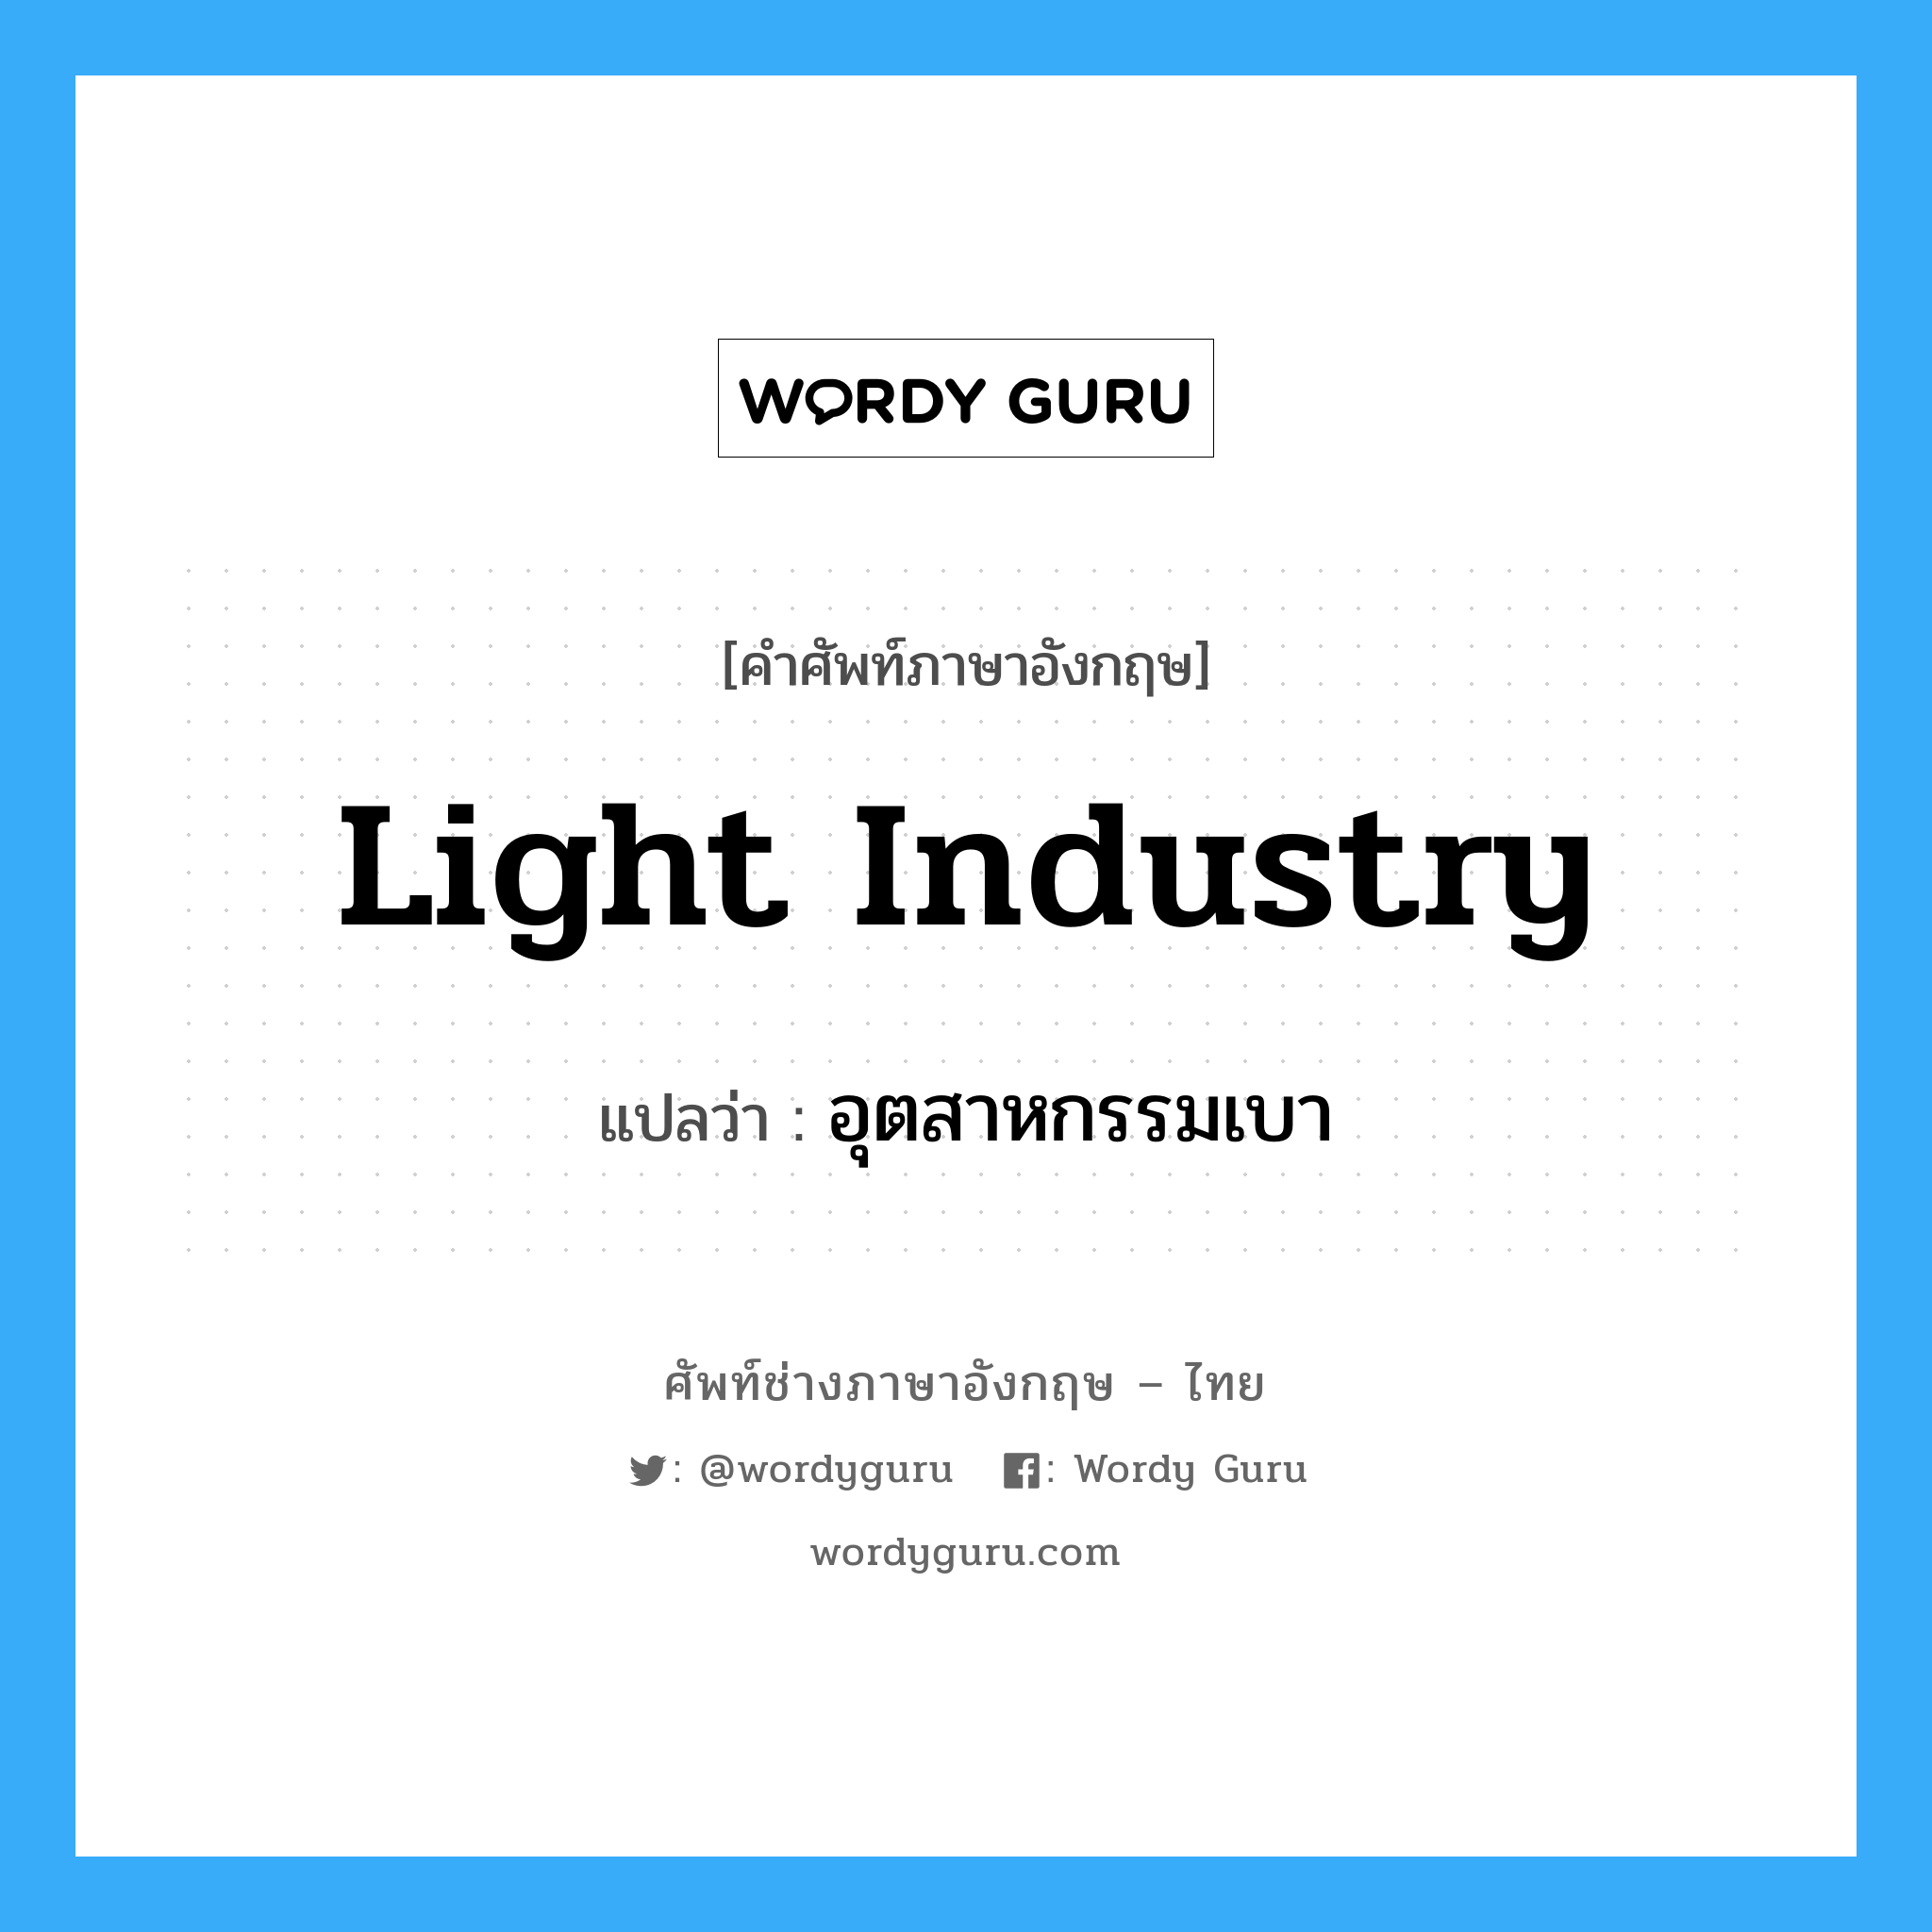 light industry แปลว่า?, คำศัพท์ช่างภาษาอังกฤษ - ไทย light industry คำศัพท์ภาษาอังกฤษ light industry แปลว่า อุตสาหกรรมเบา